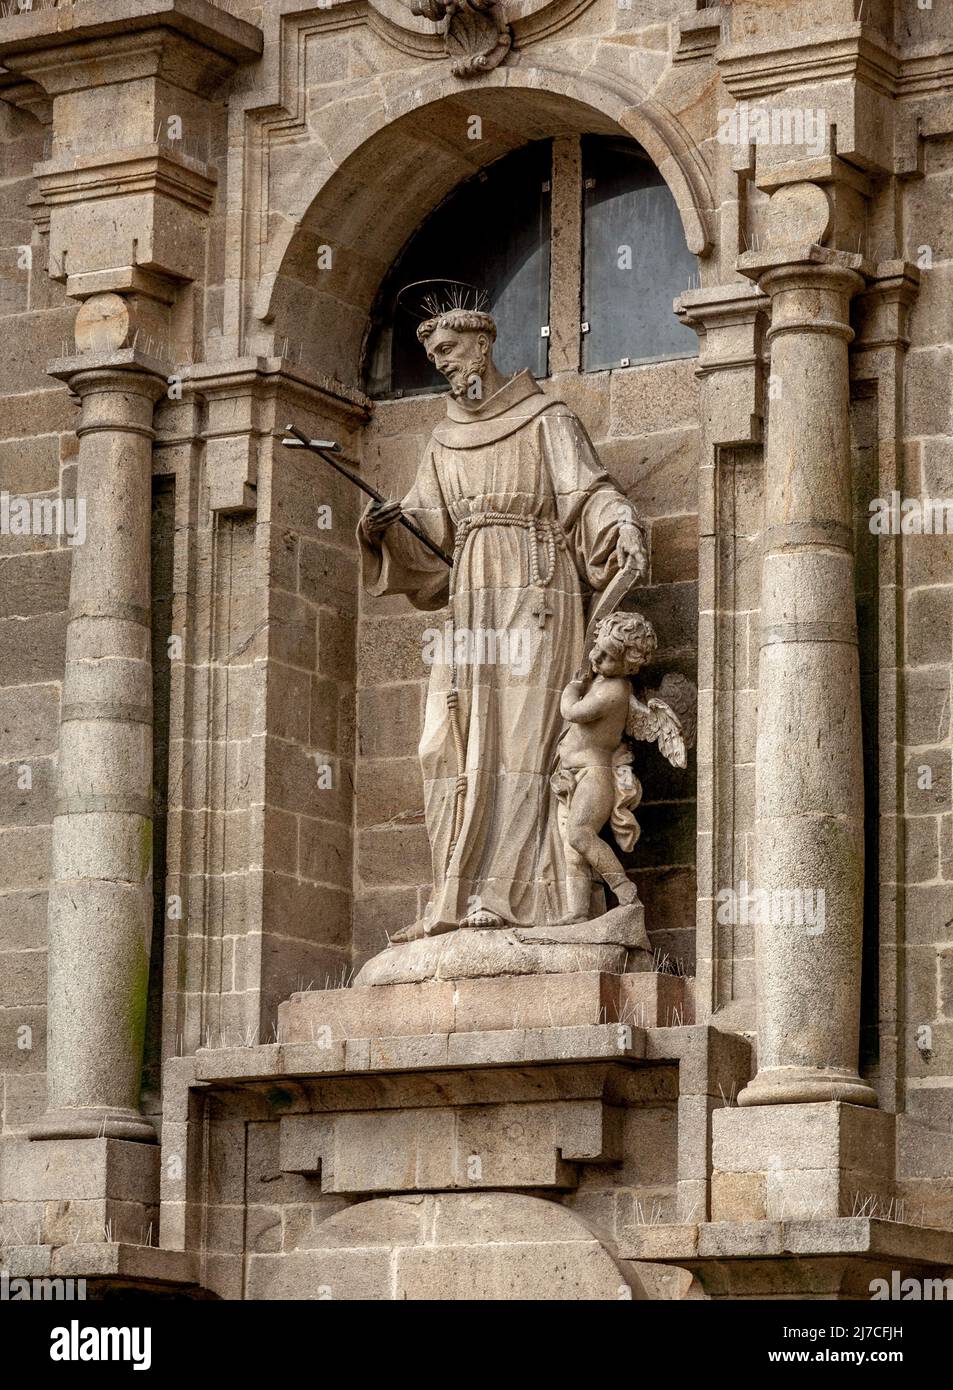 Religious statue on a house in Santiago de Compostela Stock Photo